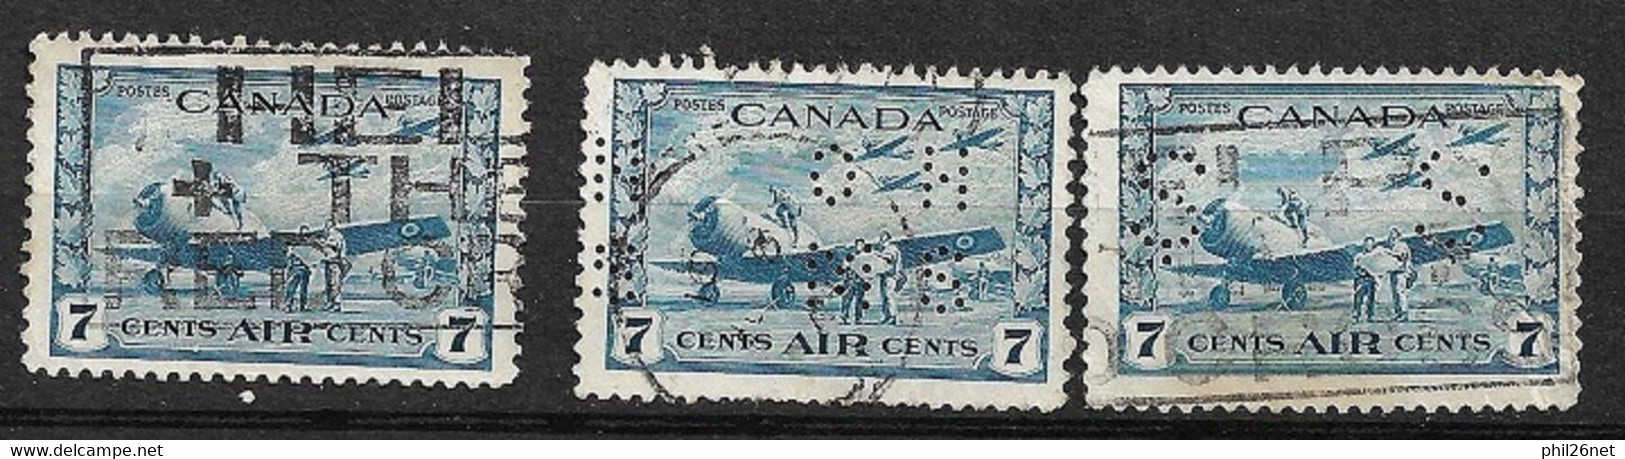 Canada   Poste Aérienne N°8 X 3 Dont Perforés OHMS  Et S S    Oblitérés B/ TB      - Poste Aérienne